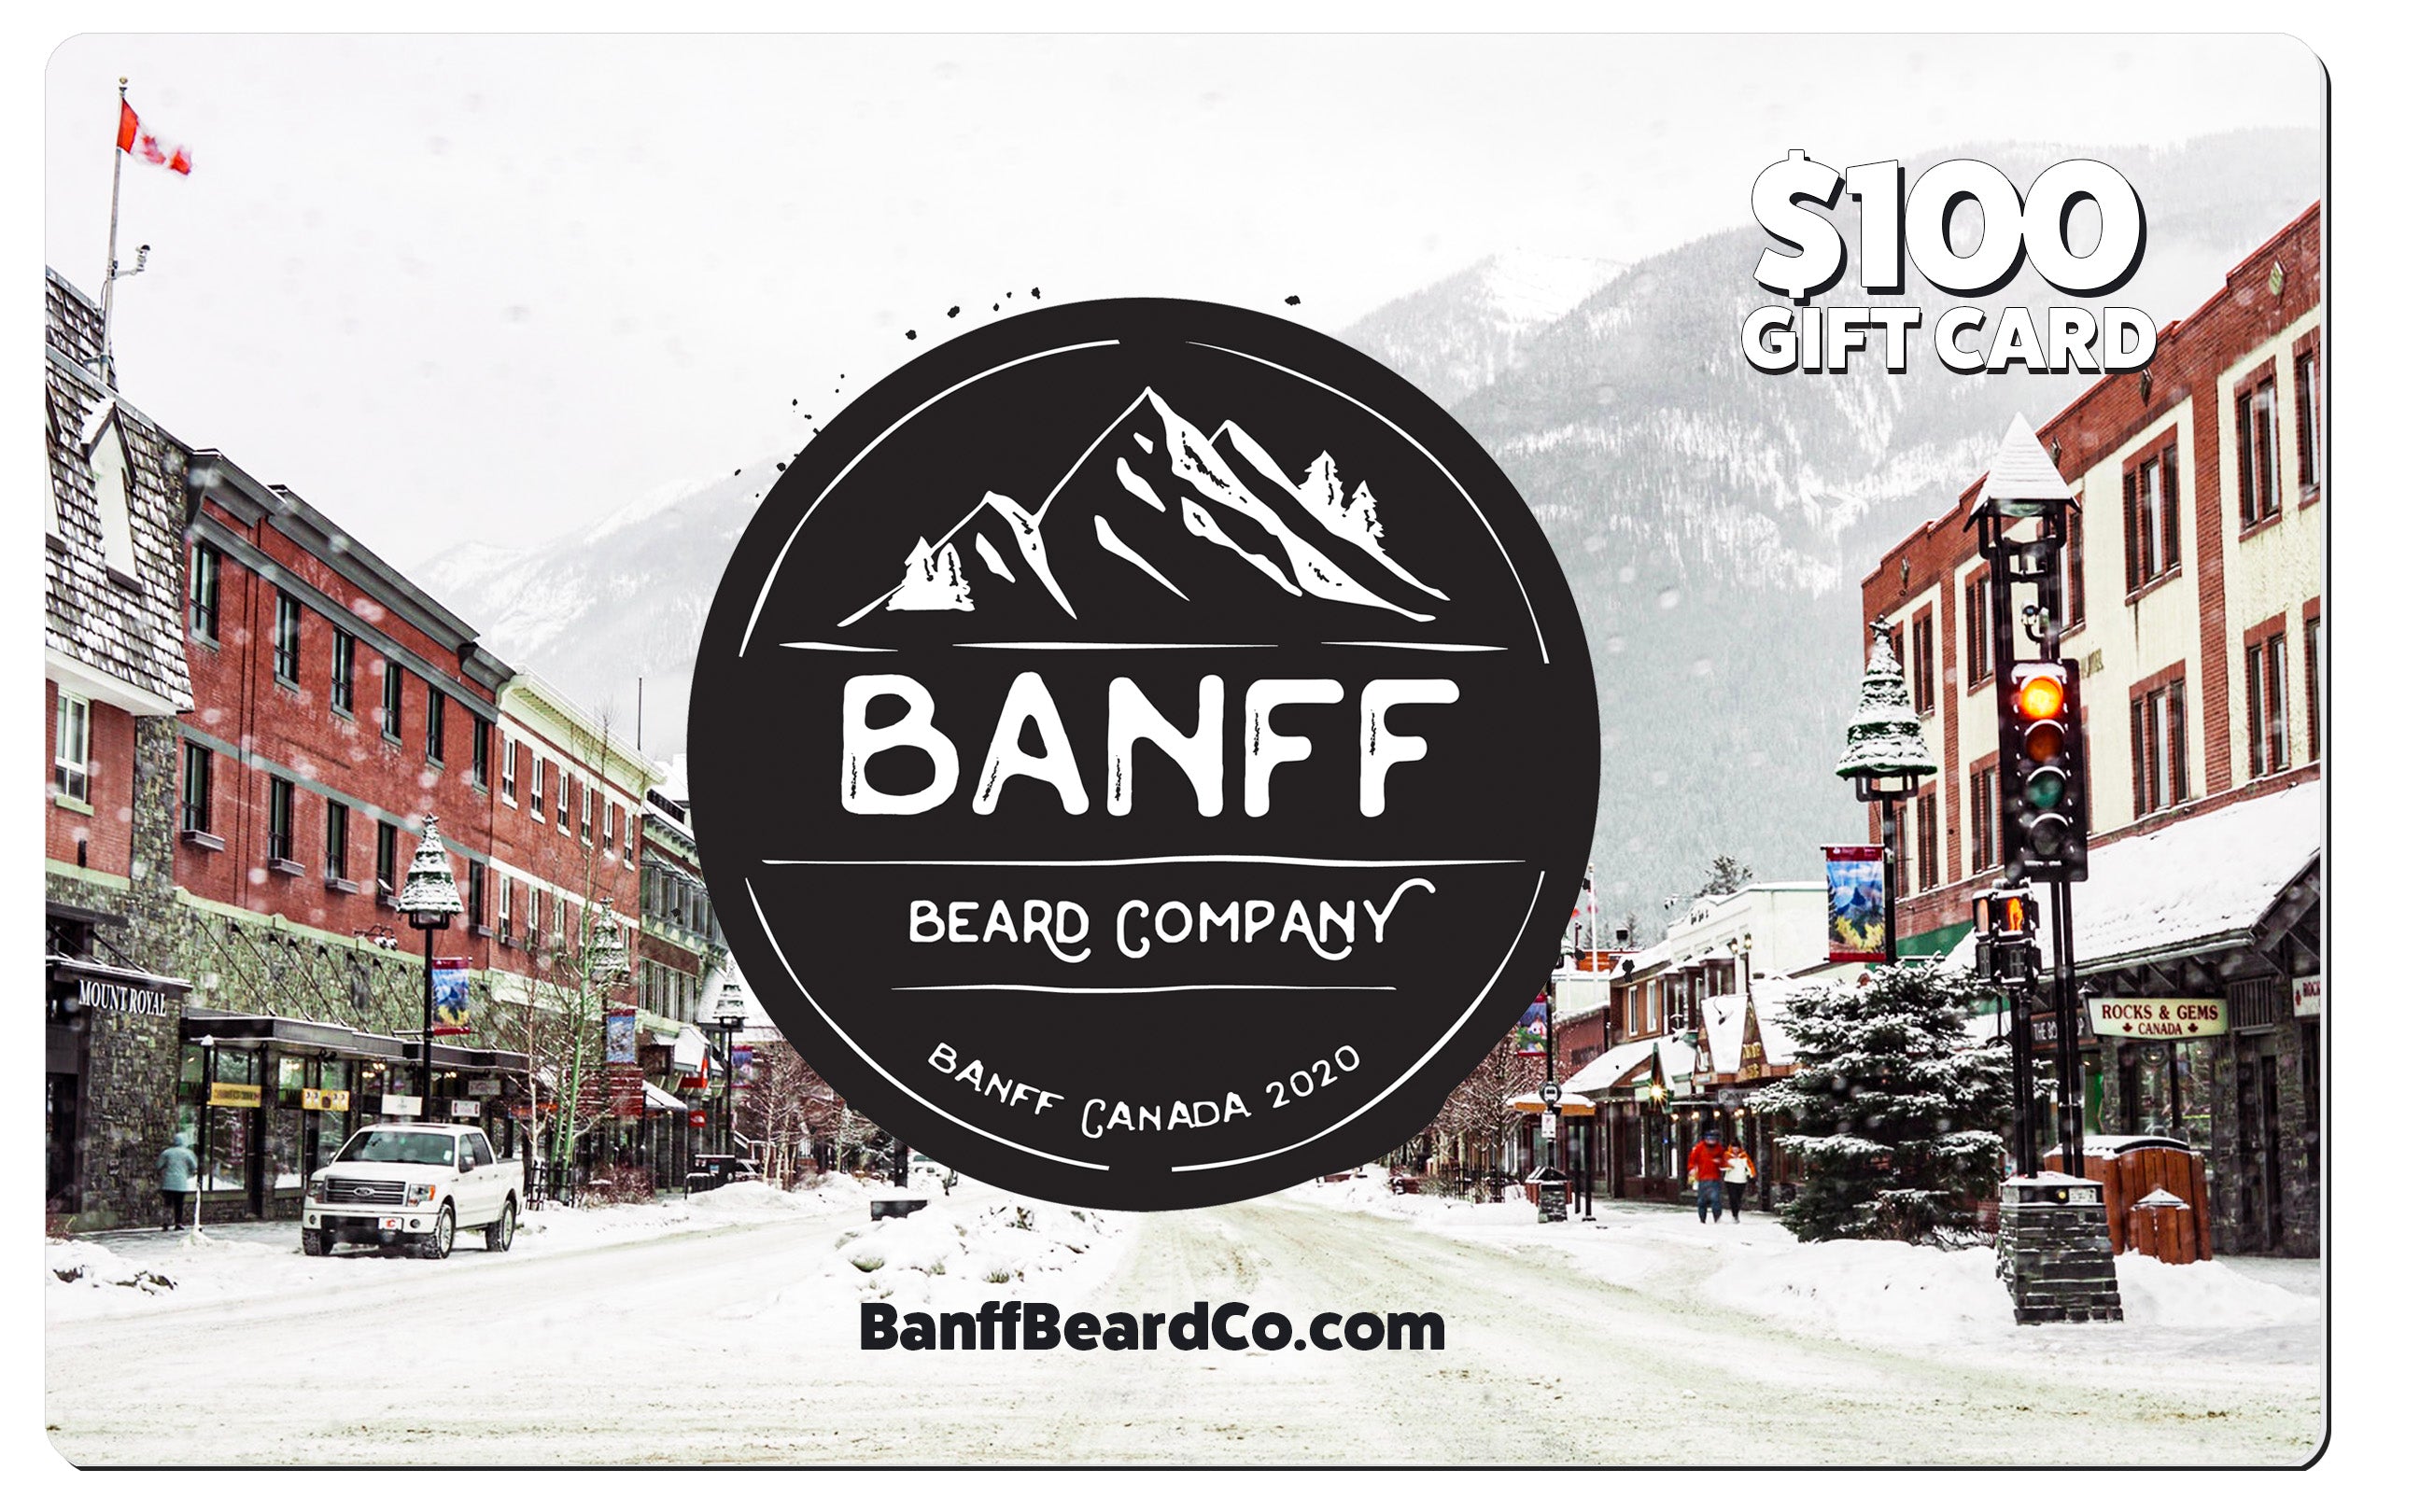 Banff Beard Co Gift Card